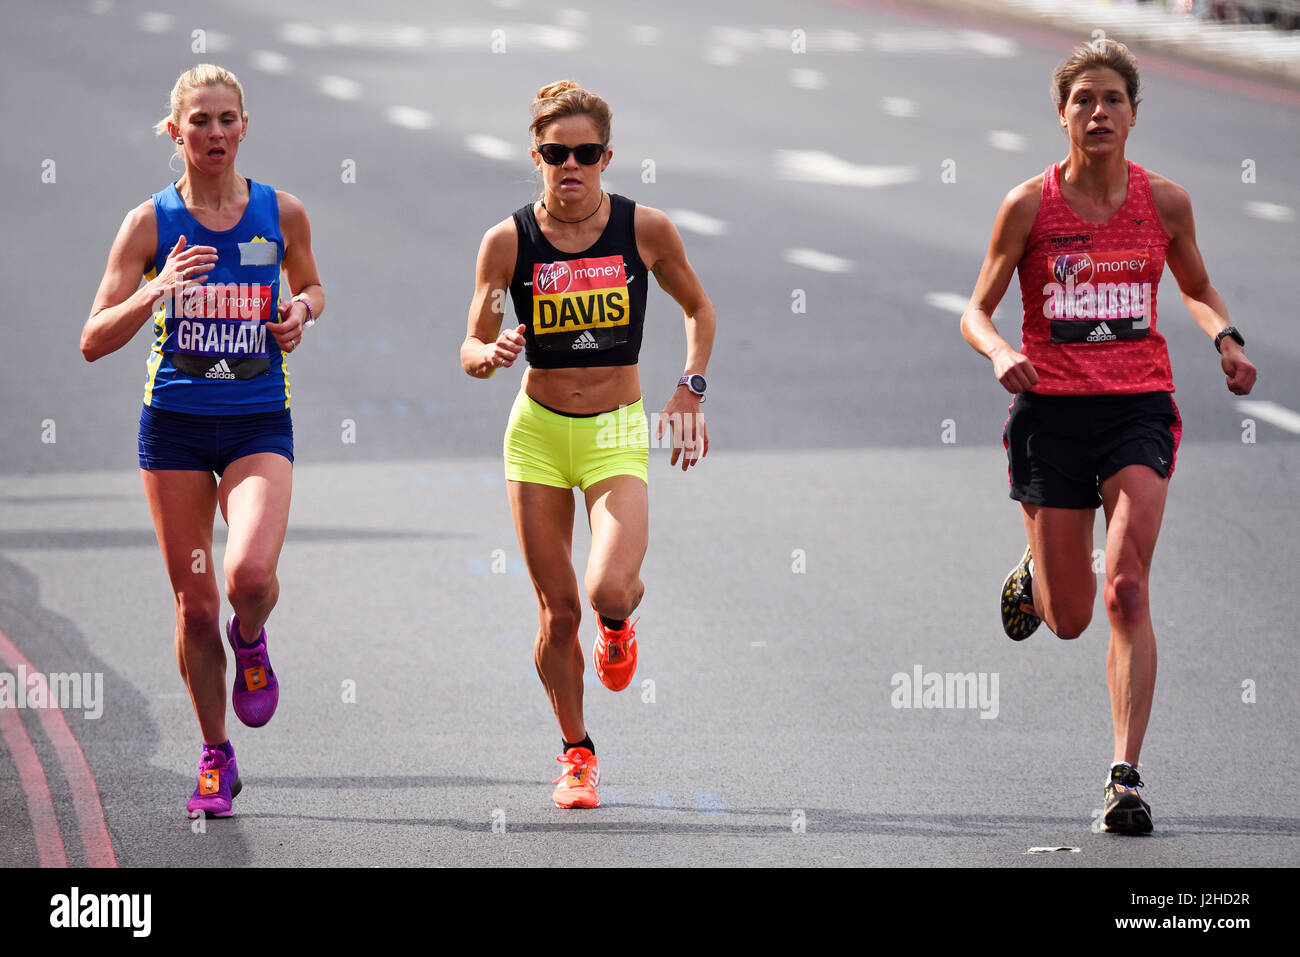 Laura Graham, Eleanor Davis e Hanna Vandenbussche partecipano alla maratona di Londra 2017 Foto Stock